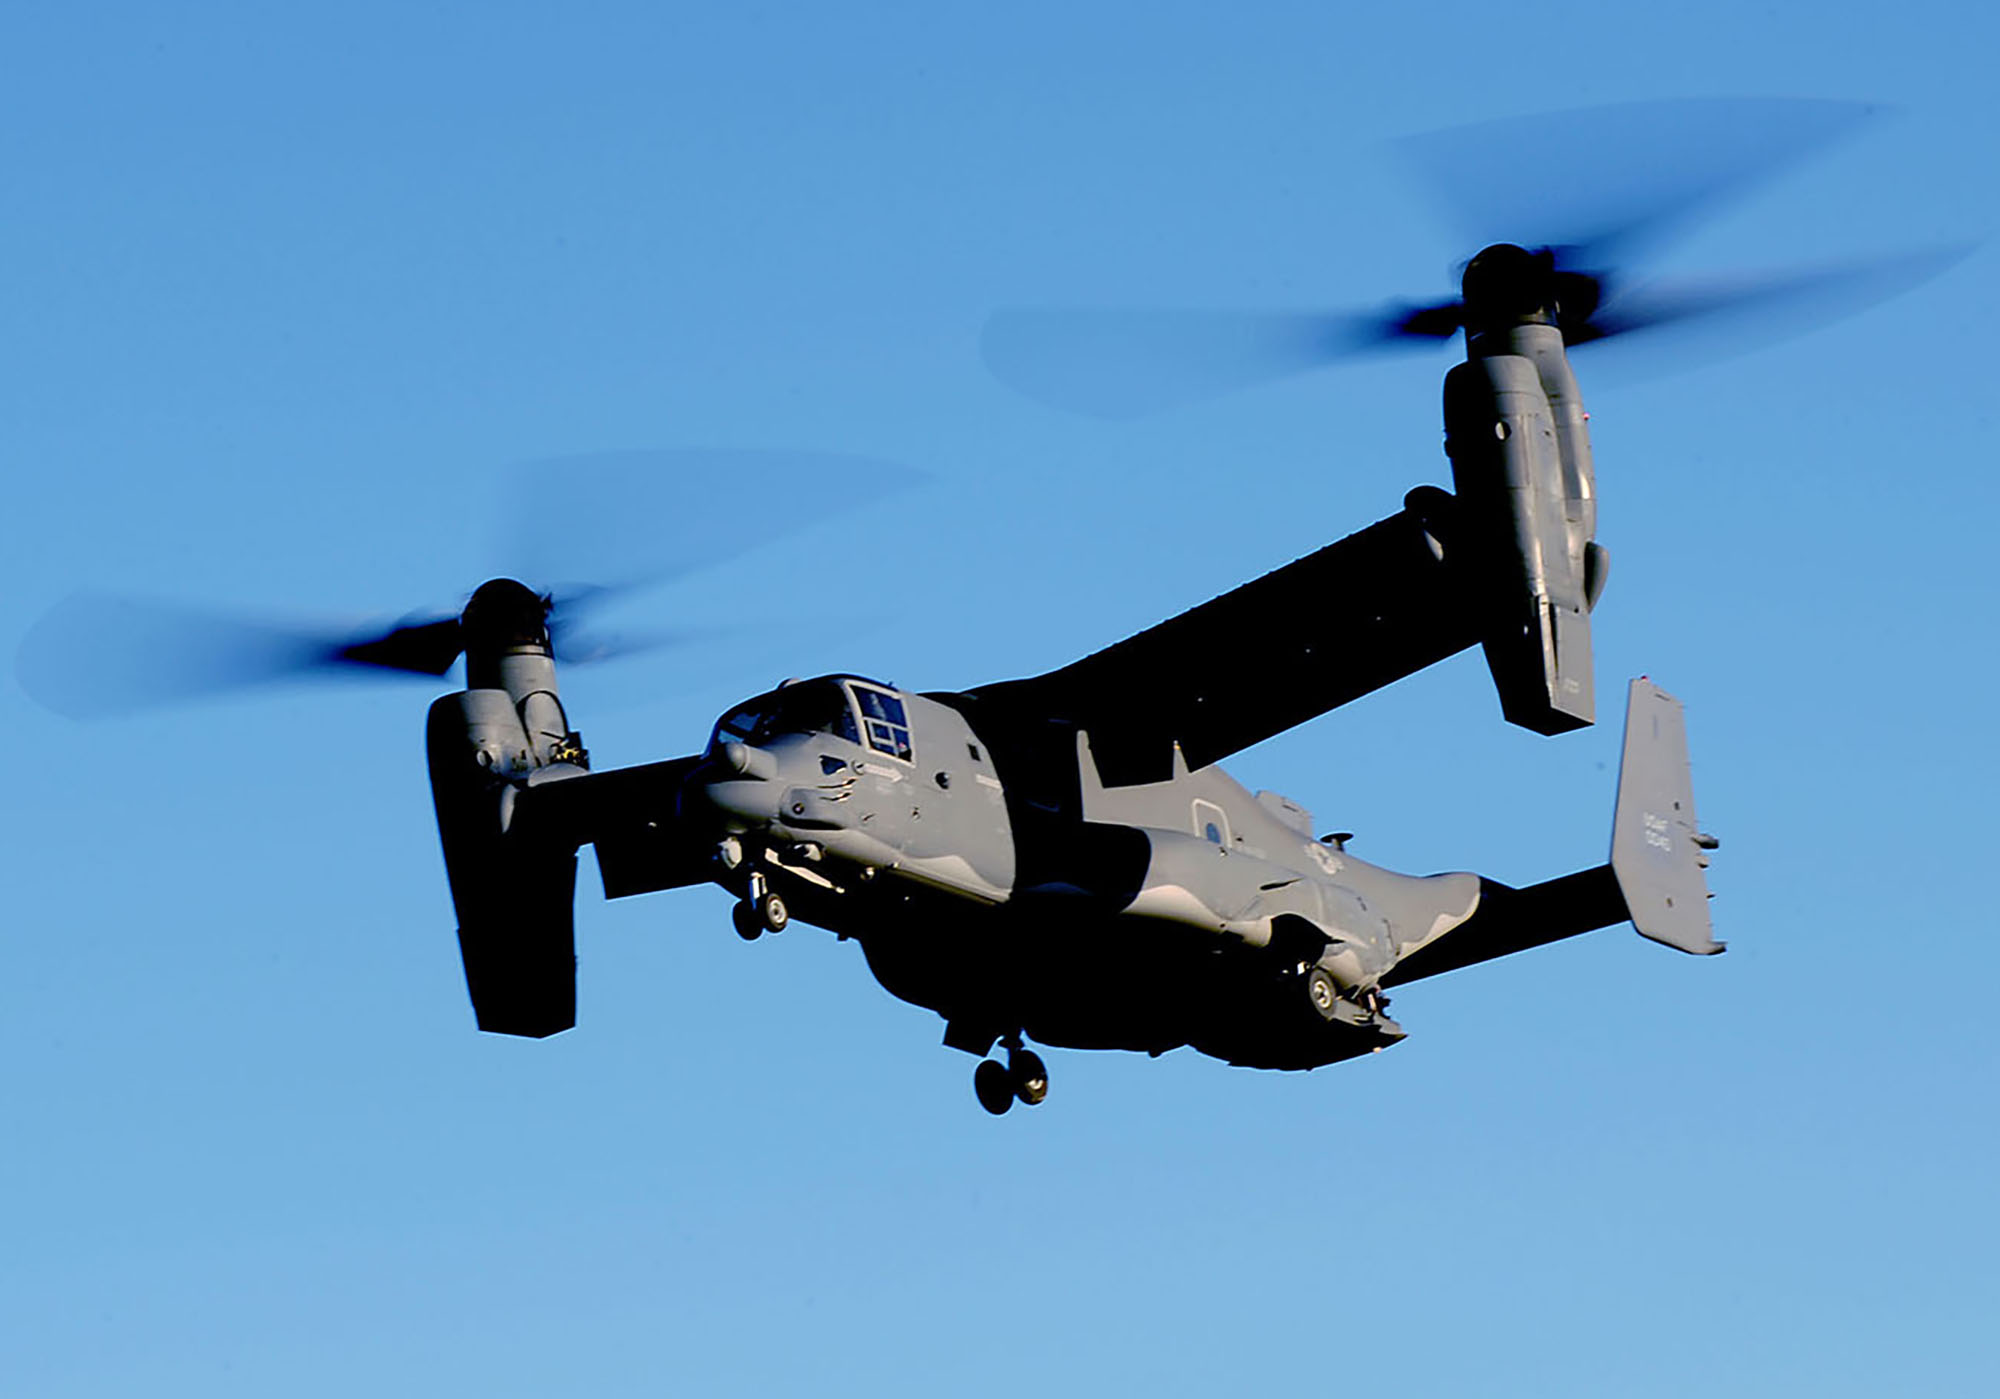 Air Force, Navy, Marines Order V-22 Osprey Standdowns after Deadly Crash